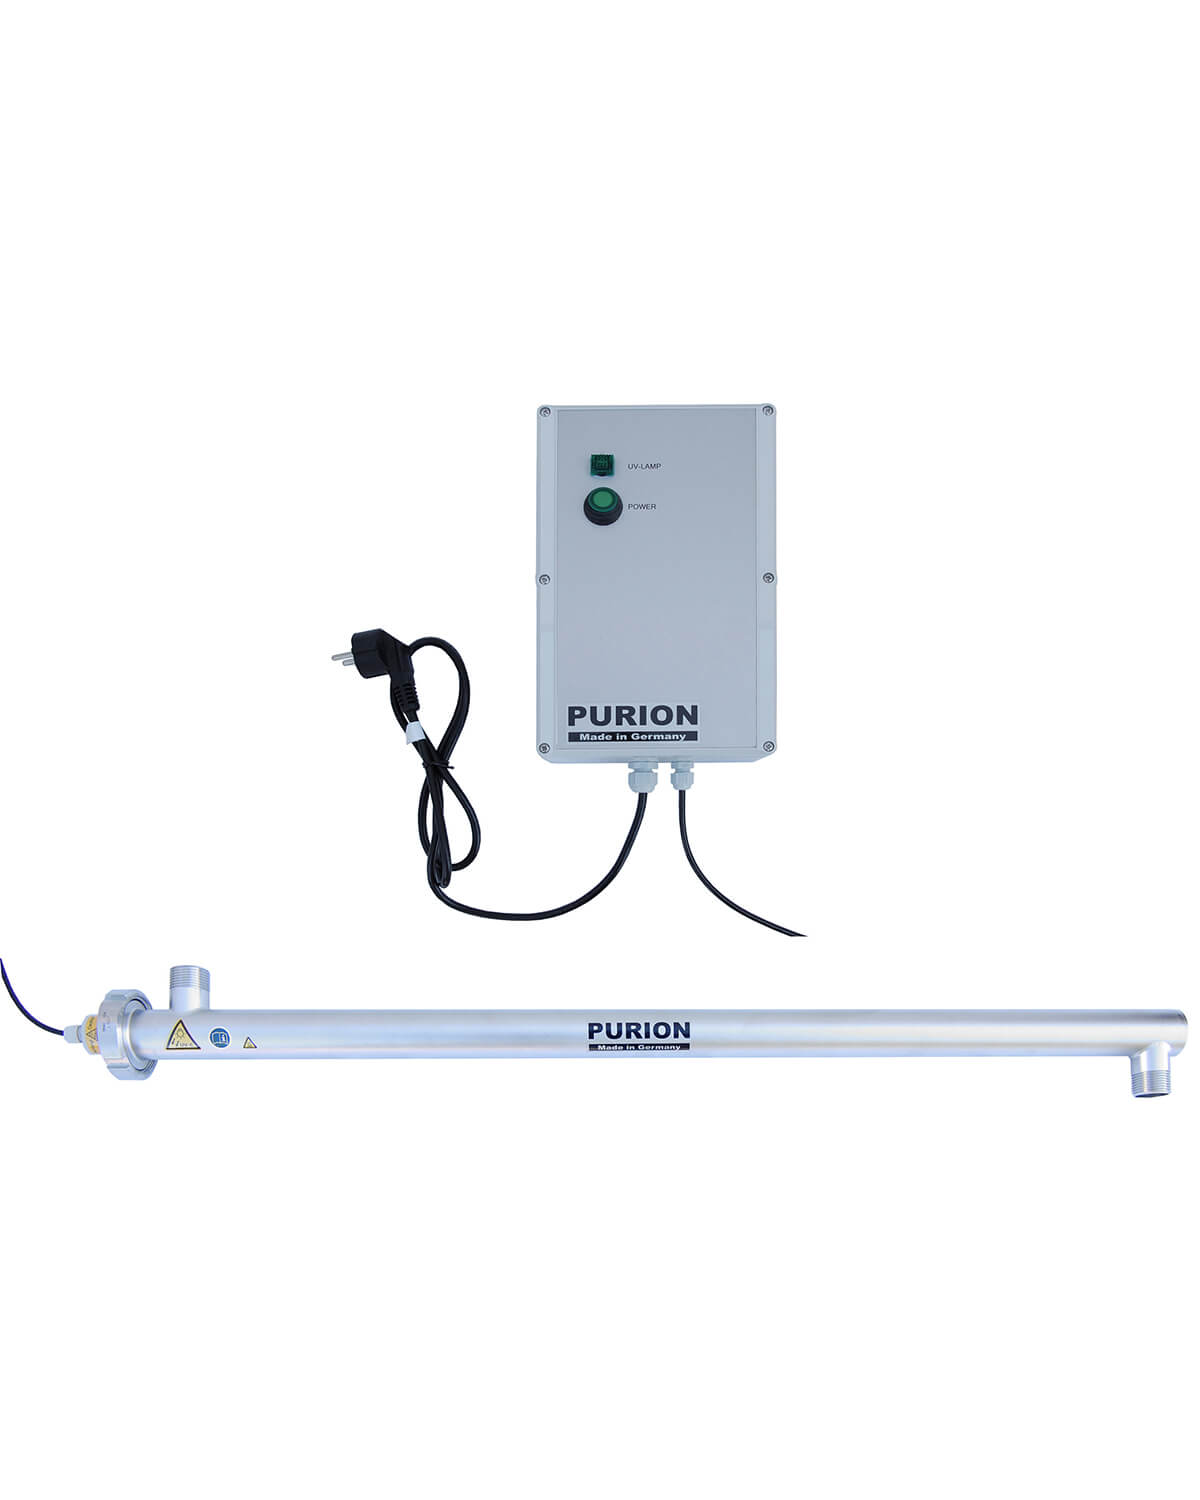 Ein mit einem UV-C-Desinfektionslicht ausgestattetes Legionellengerät, konkret das PURION 2500 H Basic der PURION GmbH.